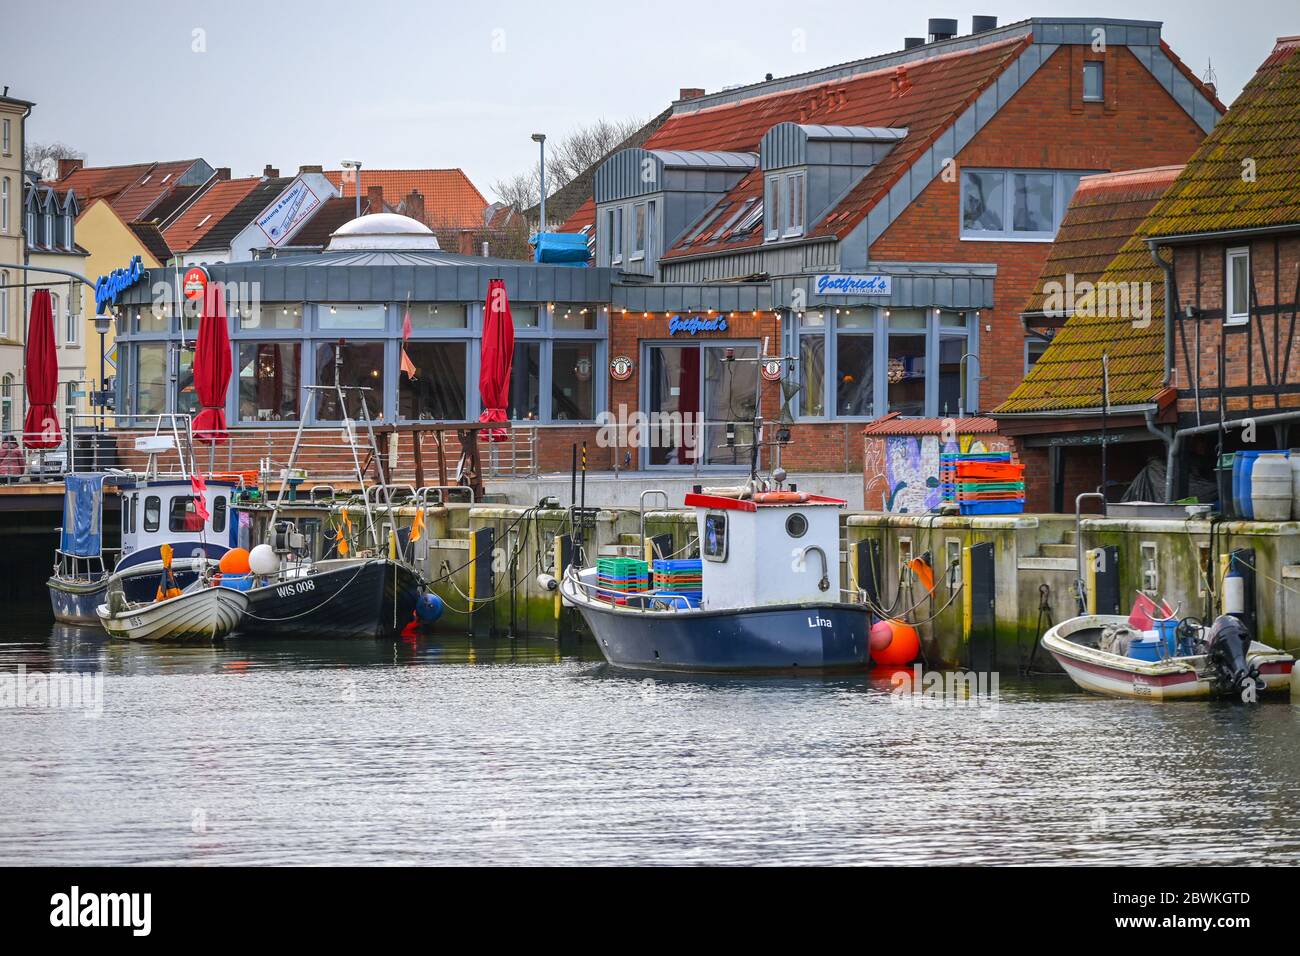 WISMAR, GERMANIA, 2 FEBBRAIO 2020: Colorate barche da pesca e ristoranti nel vecchio porto della città anseatica di Wismar, una delle attrazioni turistiche più importanti Foto Stock